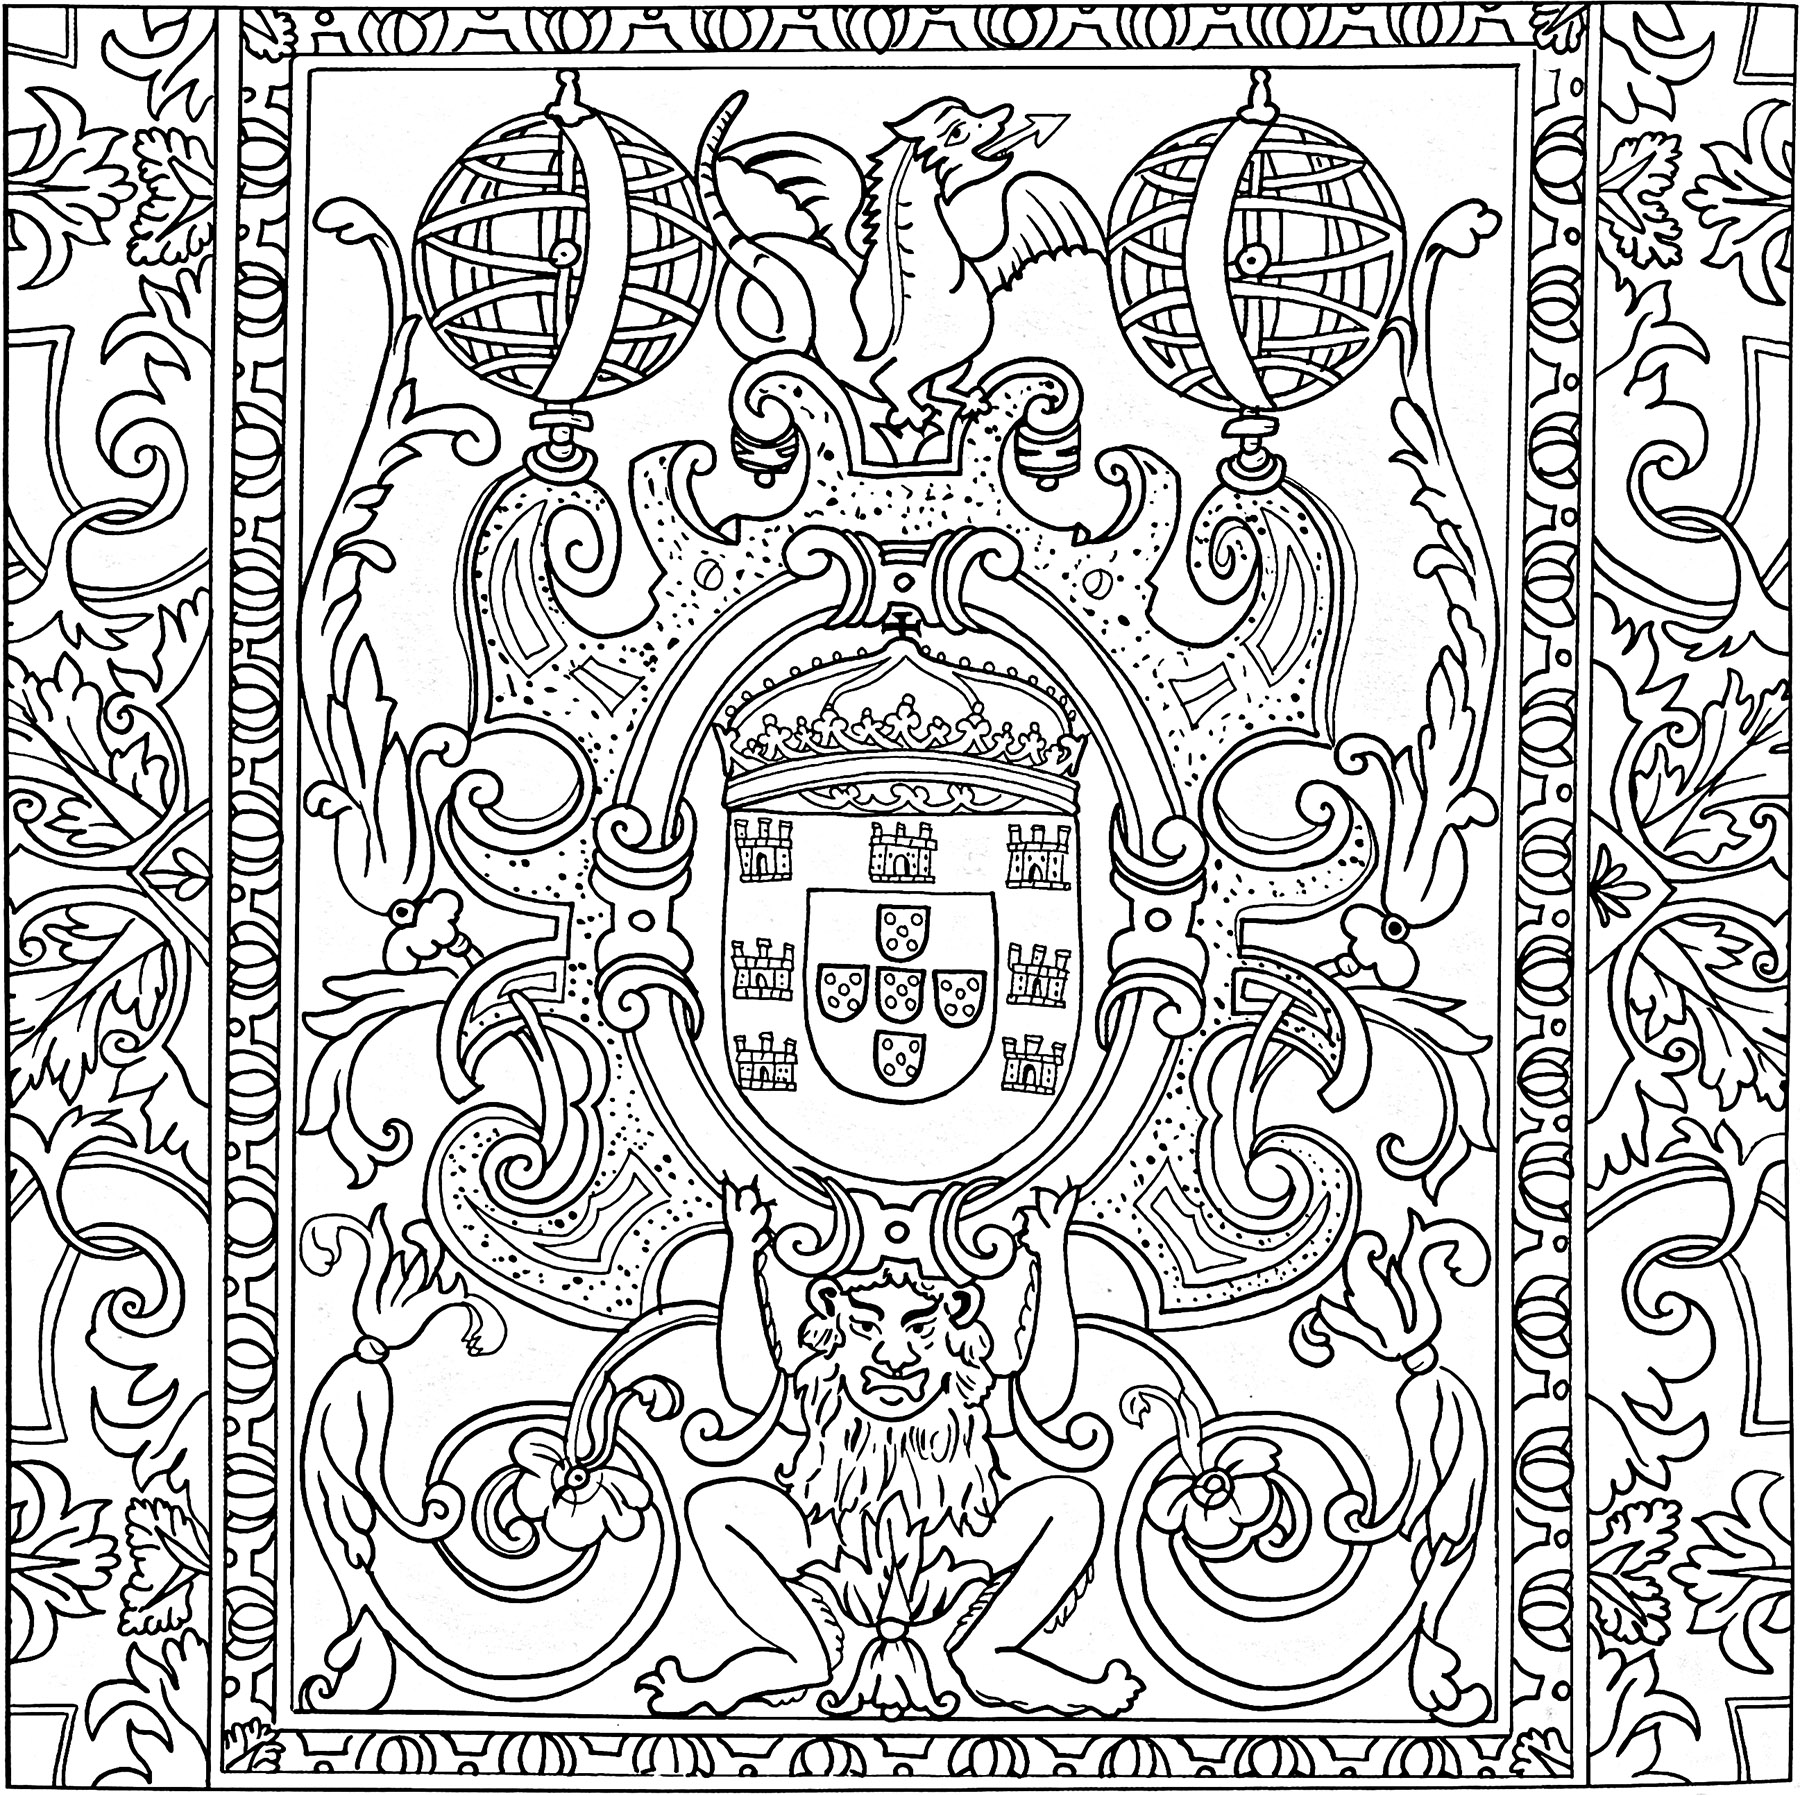 Azulejo datant du XVIIe siècle (Sintra, Portugal). Ce coloriage a été créé à partir d'un azulejo présent au Palais National de Pena, à Sintra, au Portugal. Il date du XVIIe siècle.